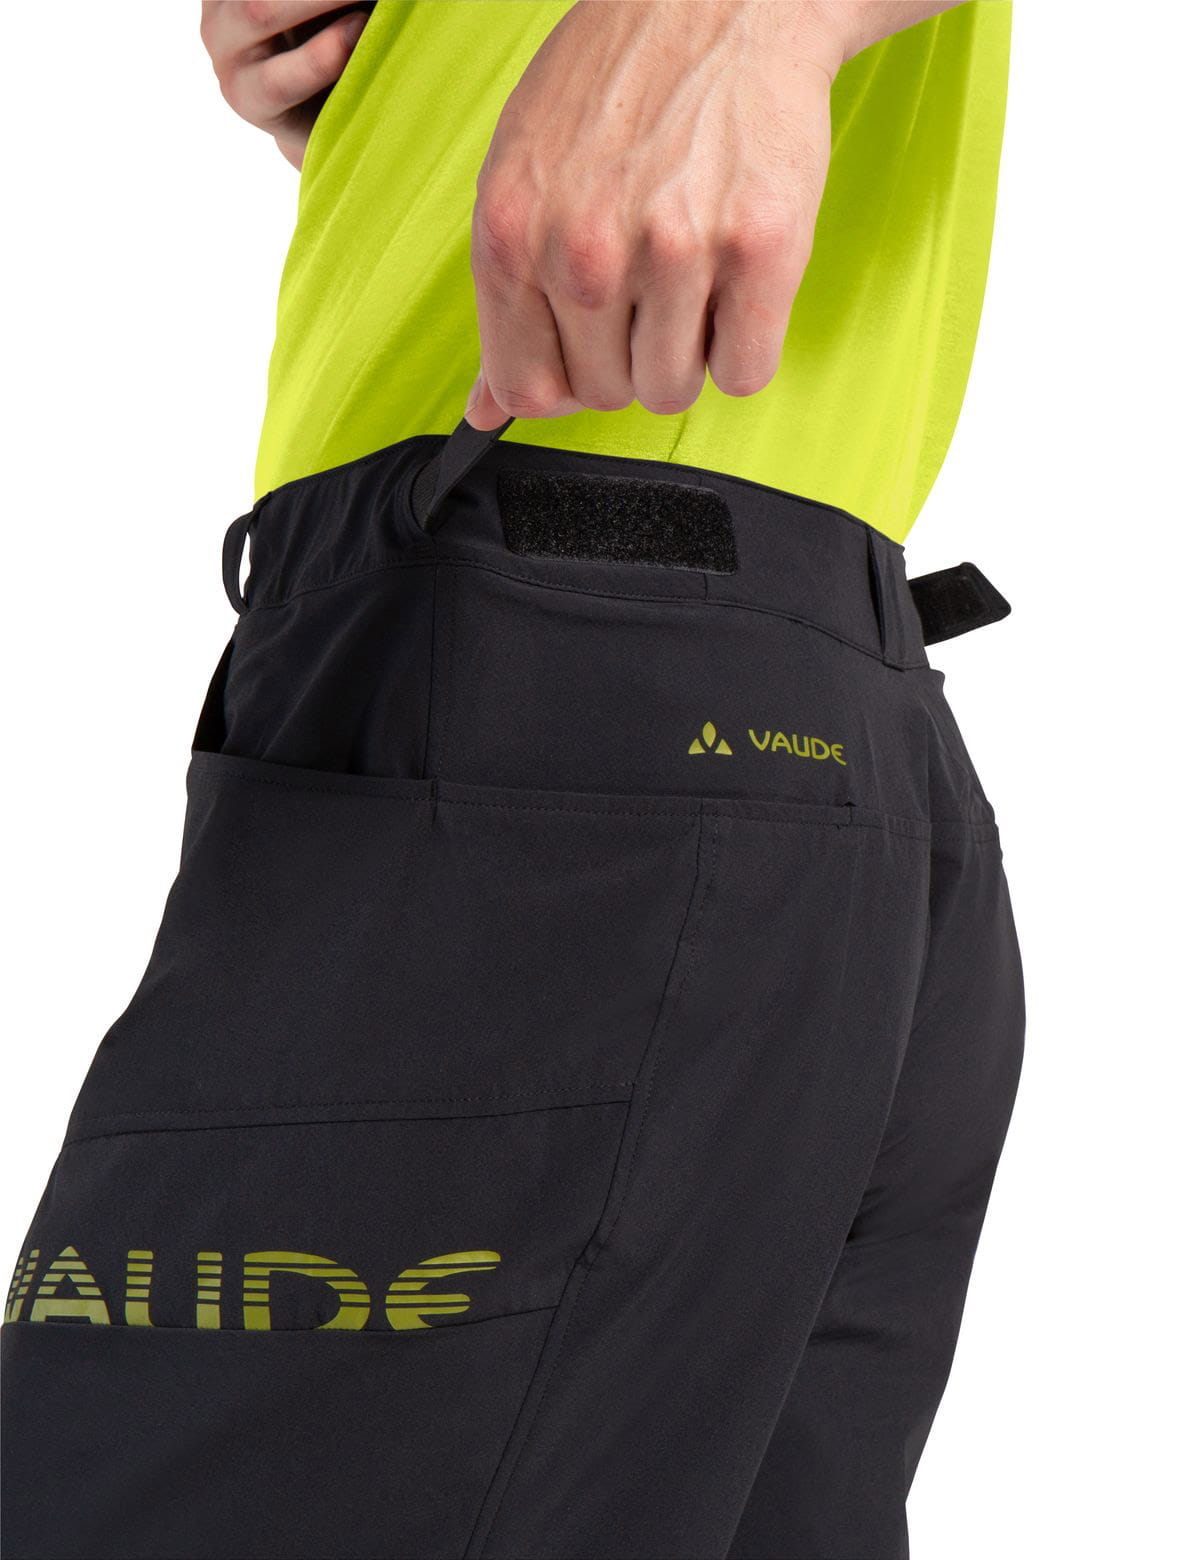 VAUDE Mens Altissimo Shorts III Bike Shorts with herausnehmbarer Innenhose  buy online